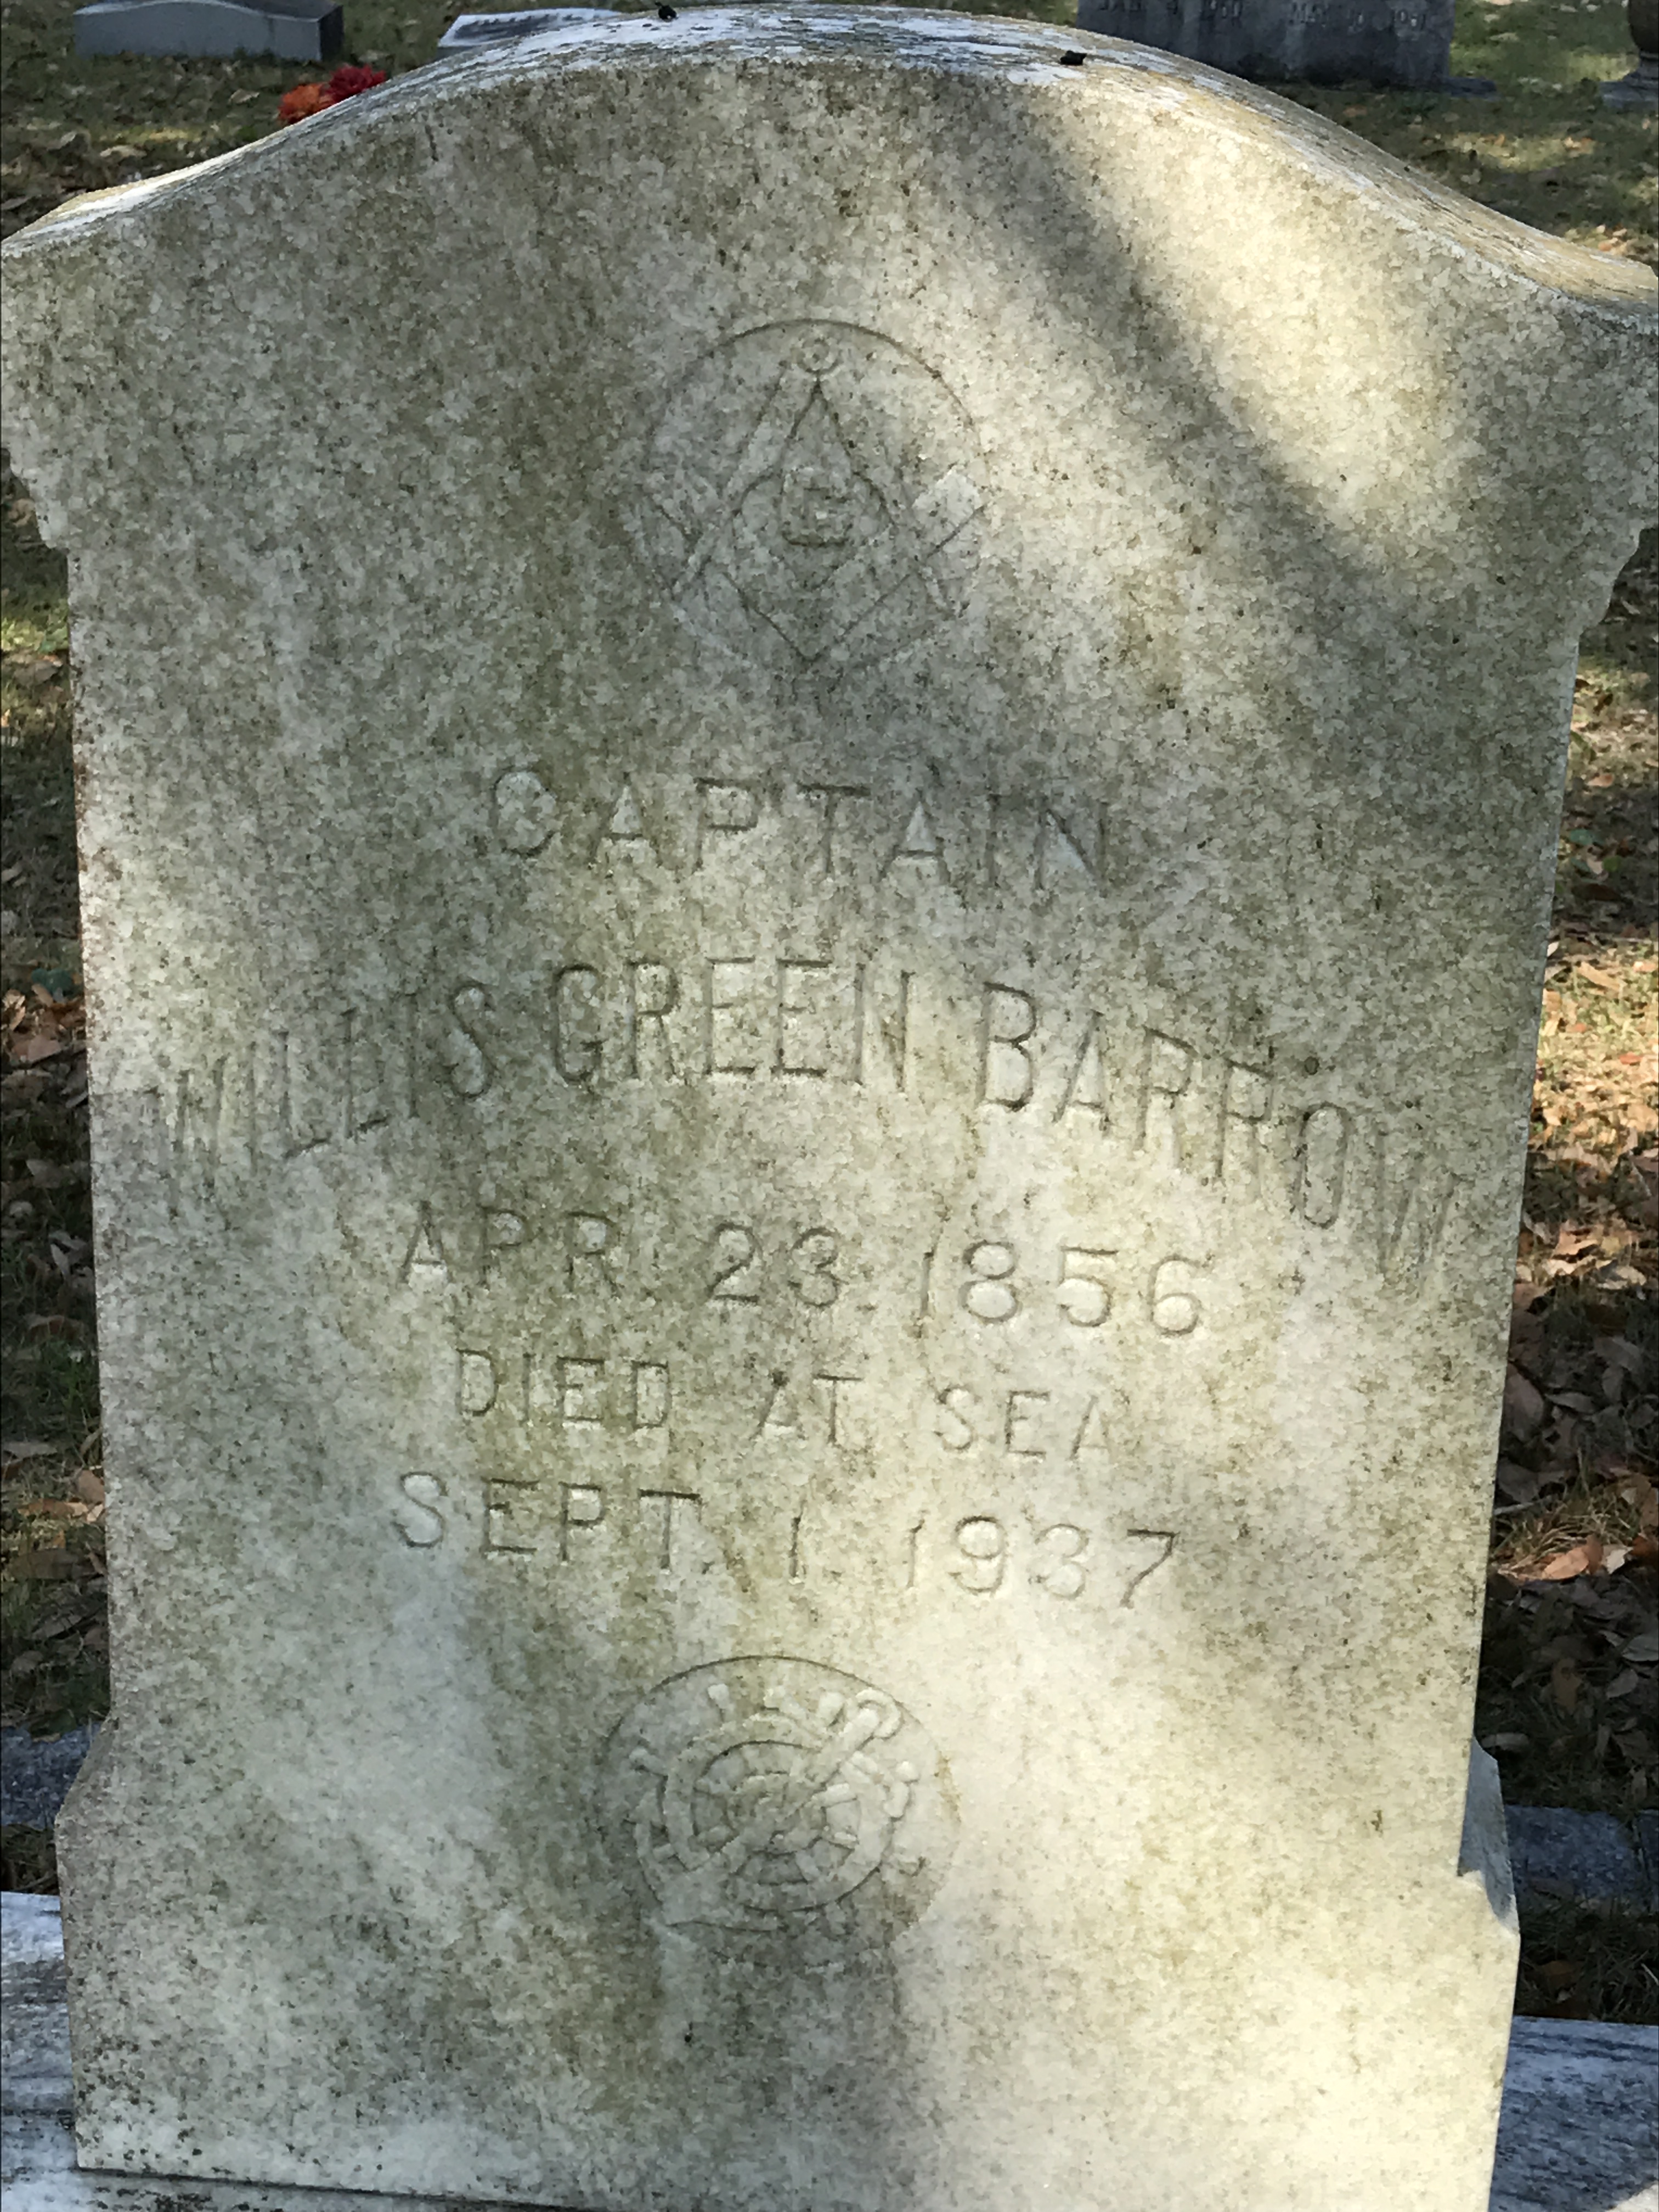 Captain Willis Green Barrow